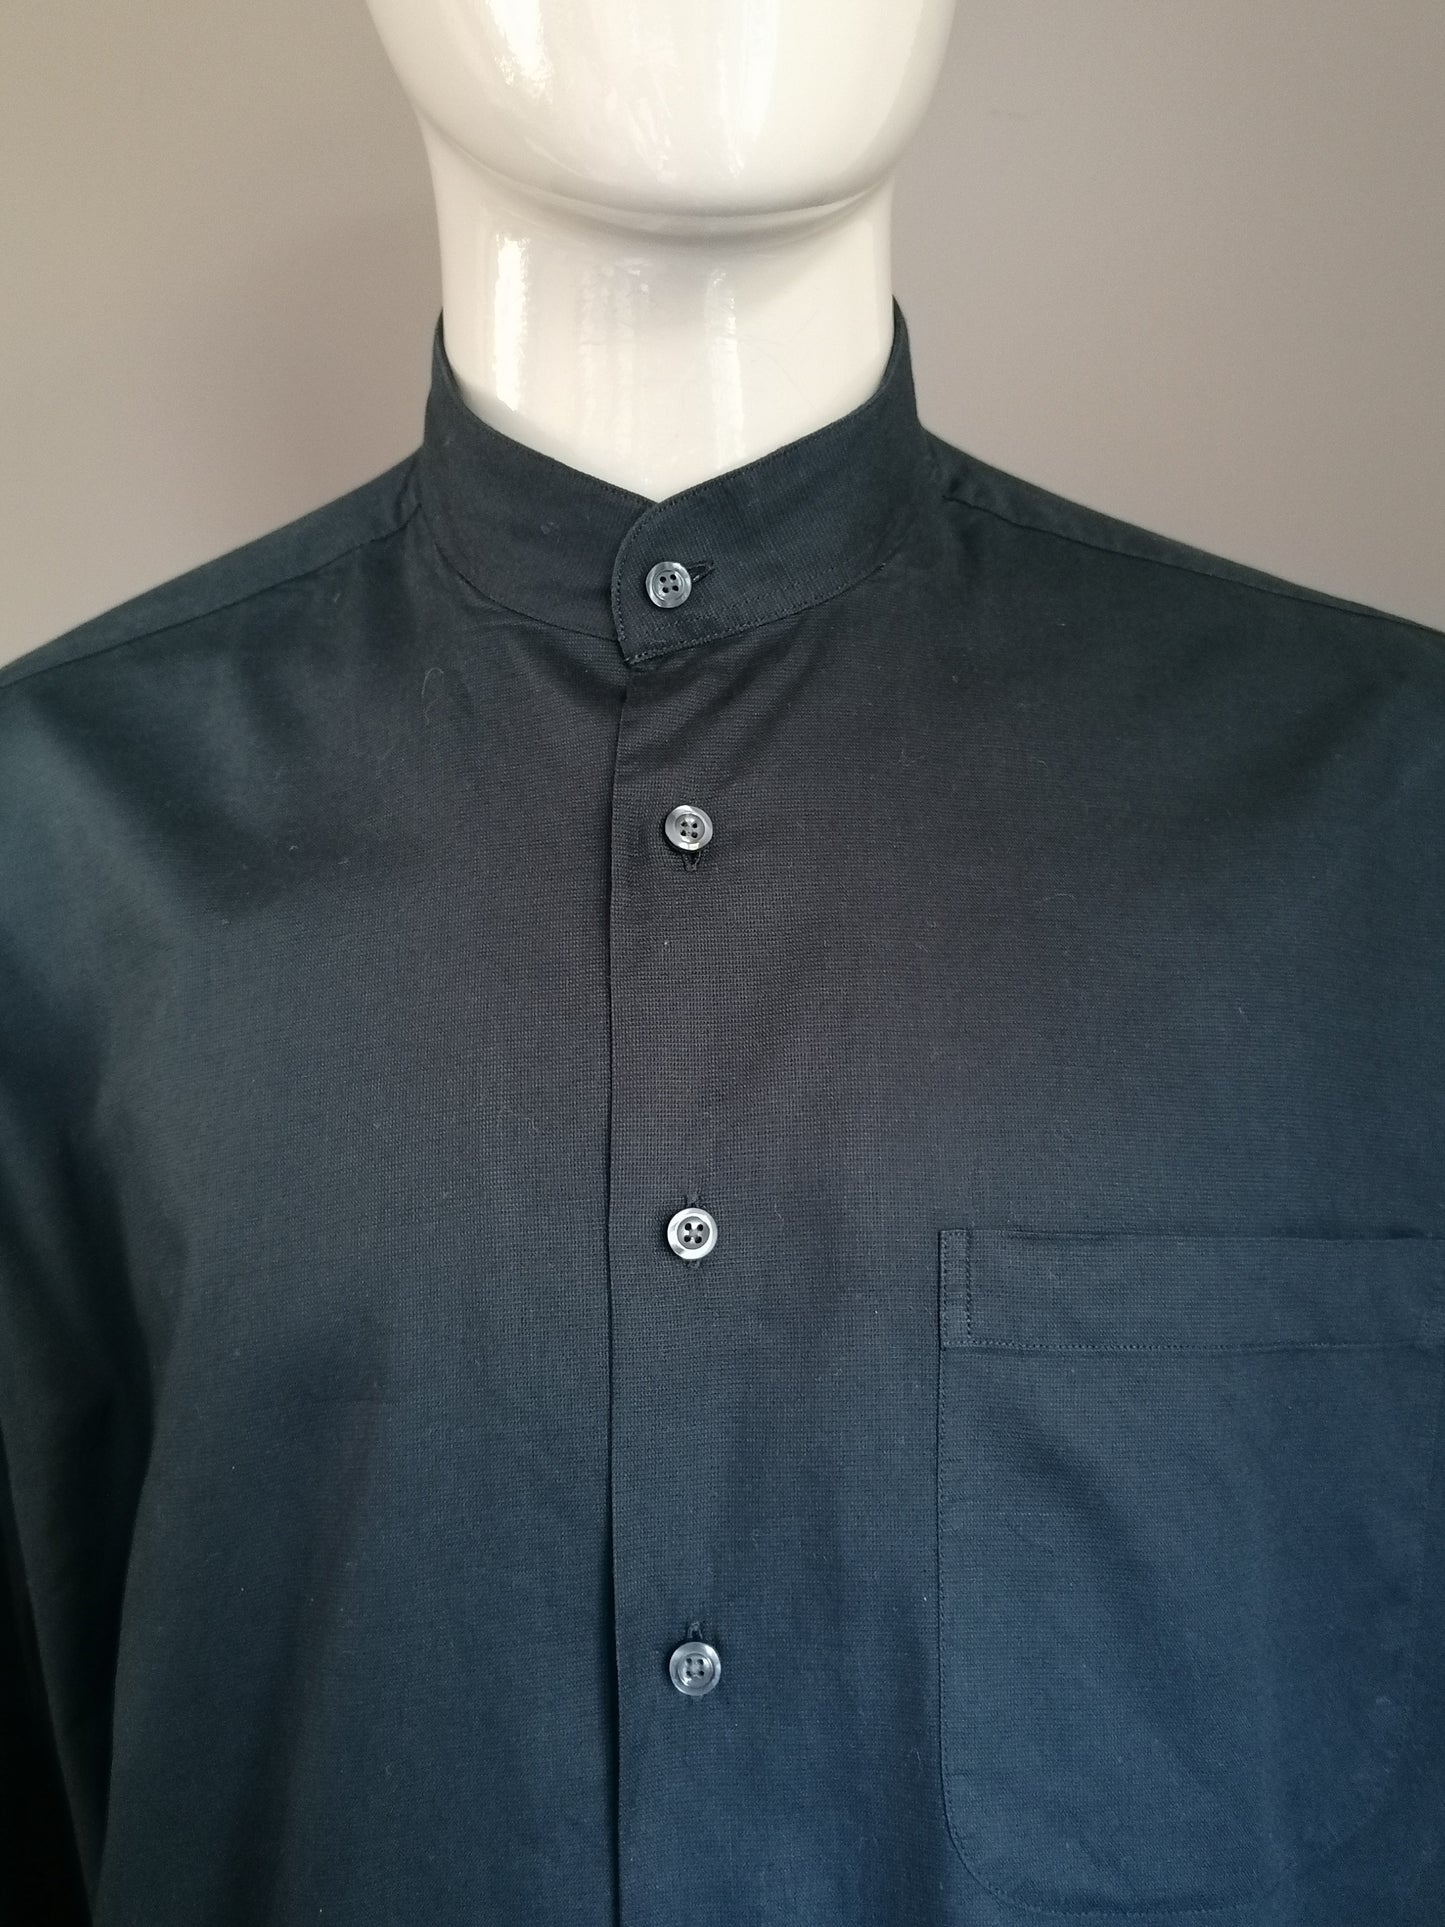 Camisa McEarl con vertical / agricultores / collar MAO .. de color negro. Tamaño XL - XXL / 2XL.